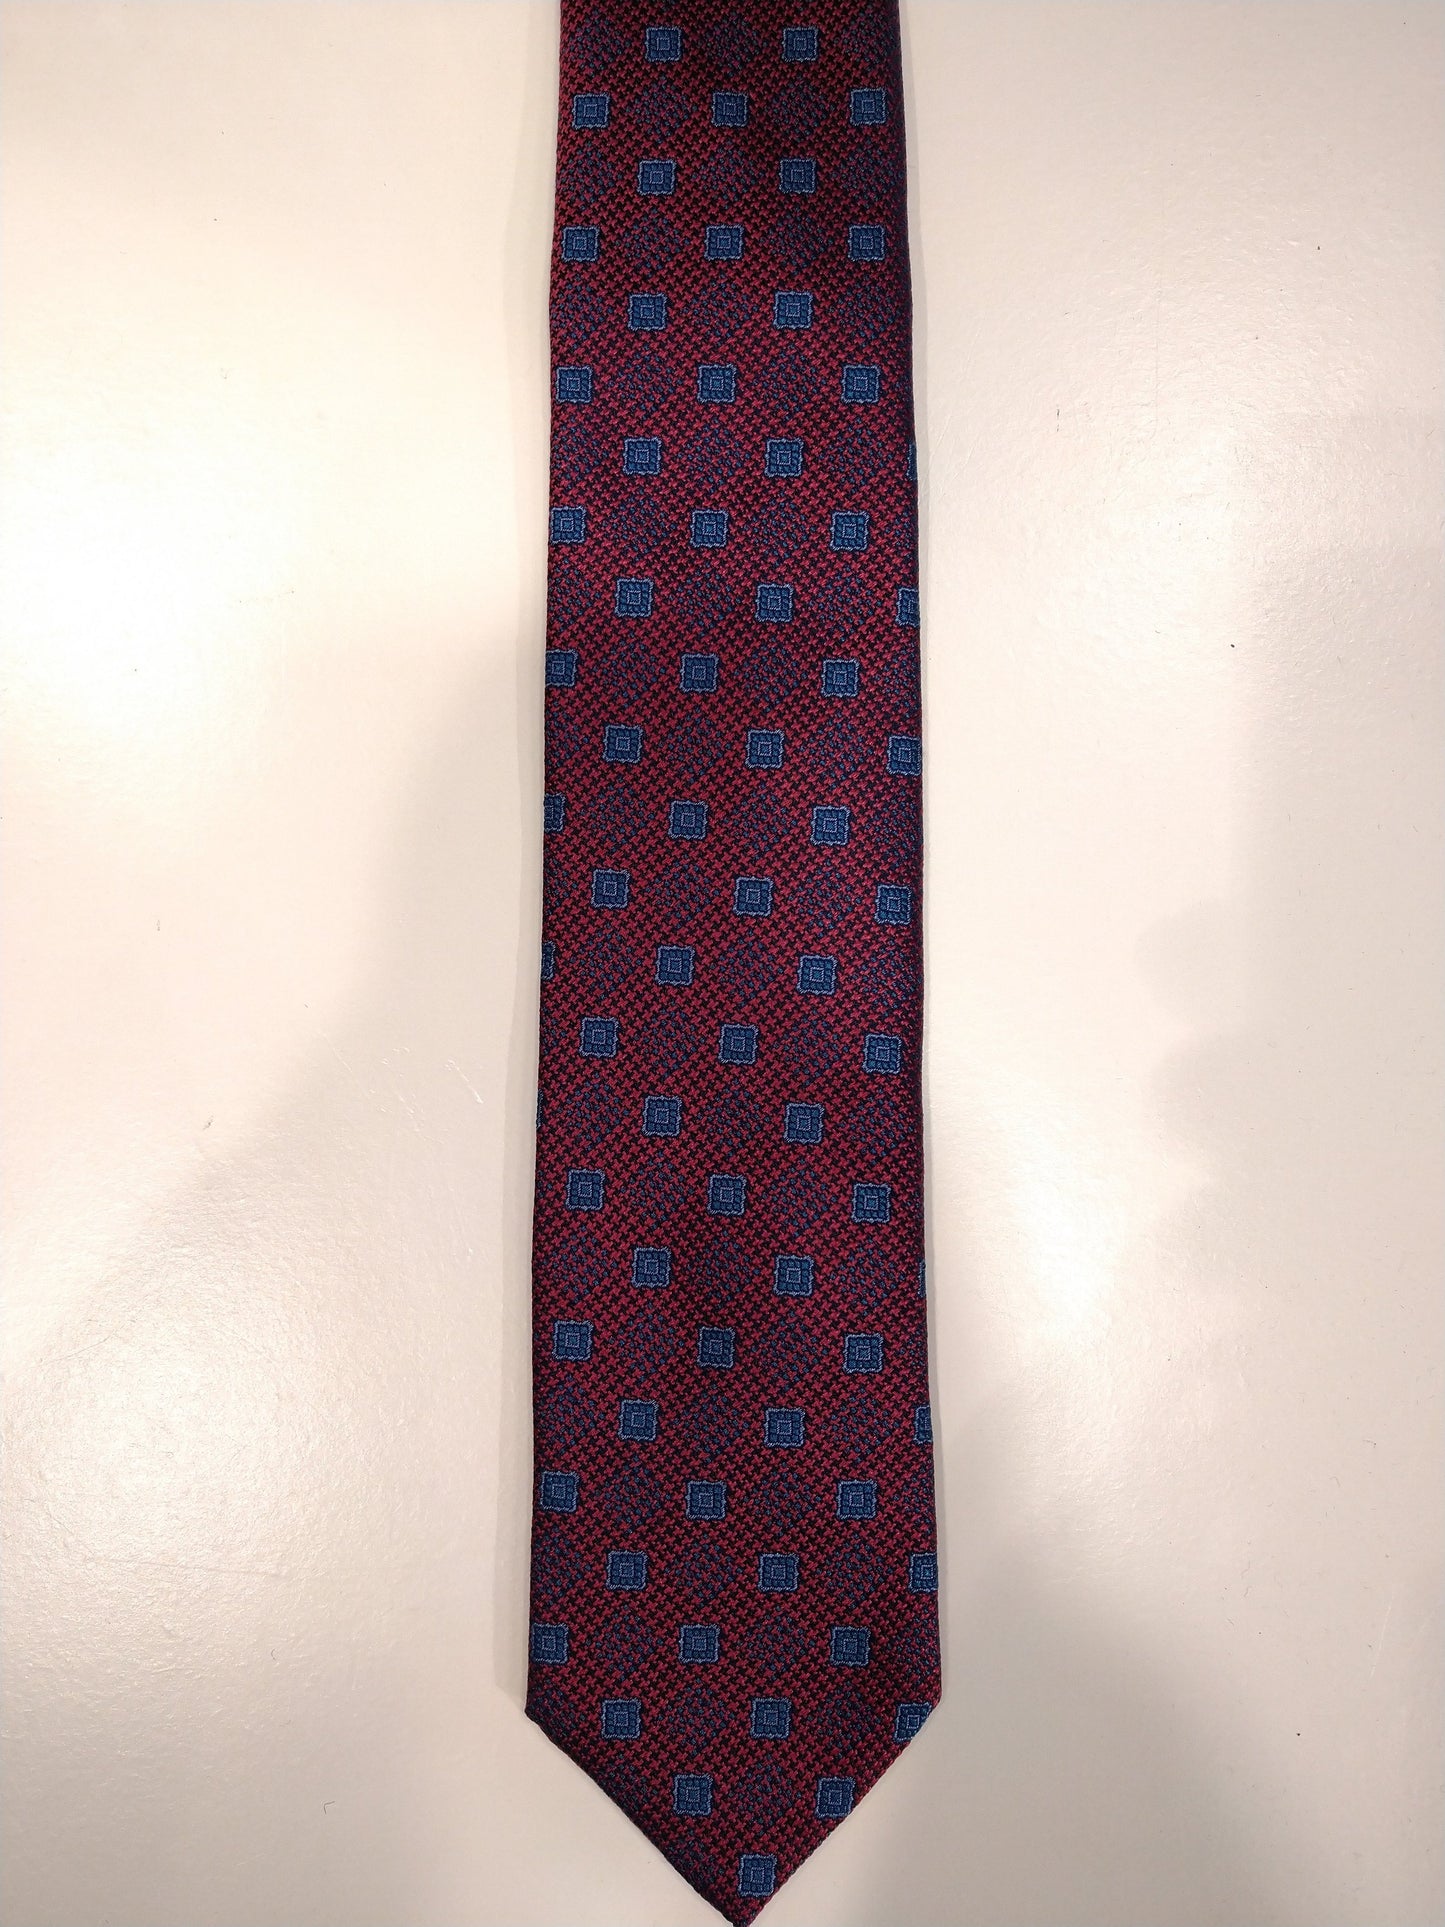 Max Goodman zijde stropdas. Paars met blauw motief.